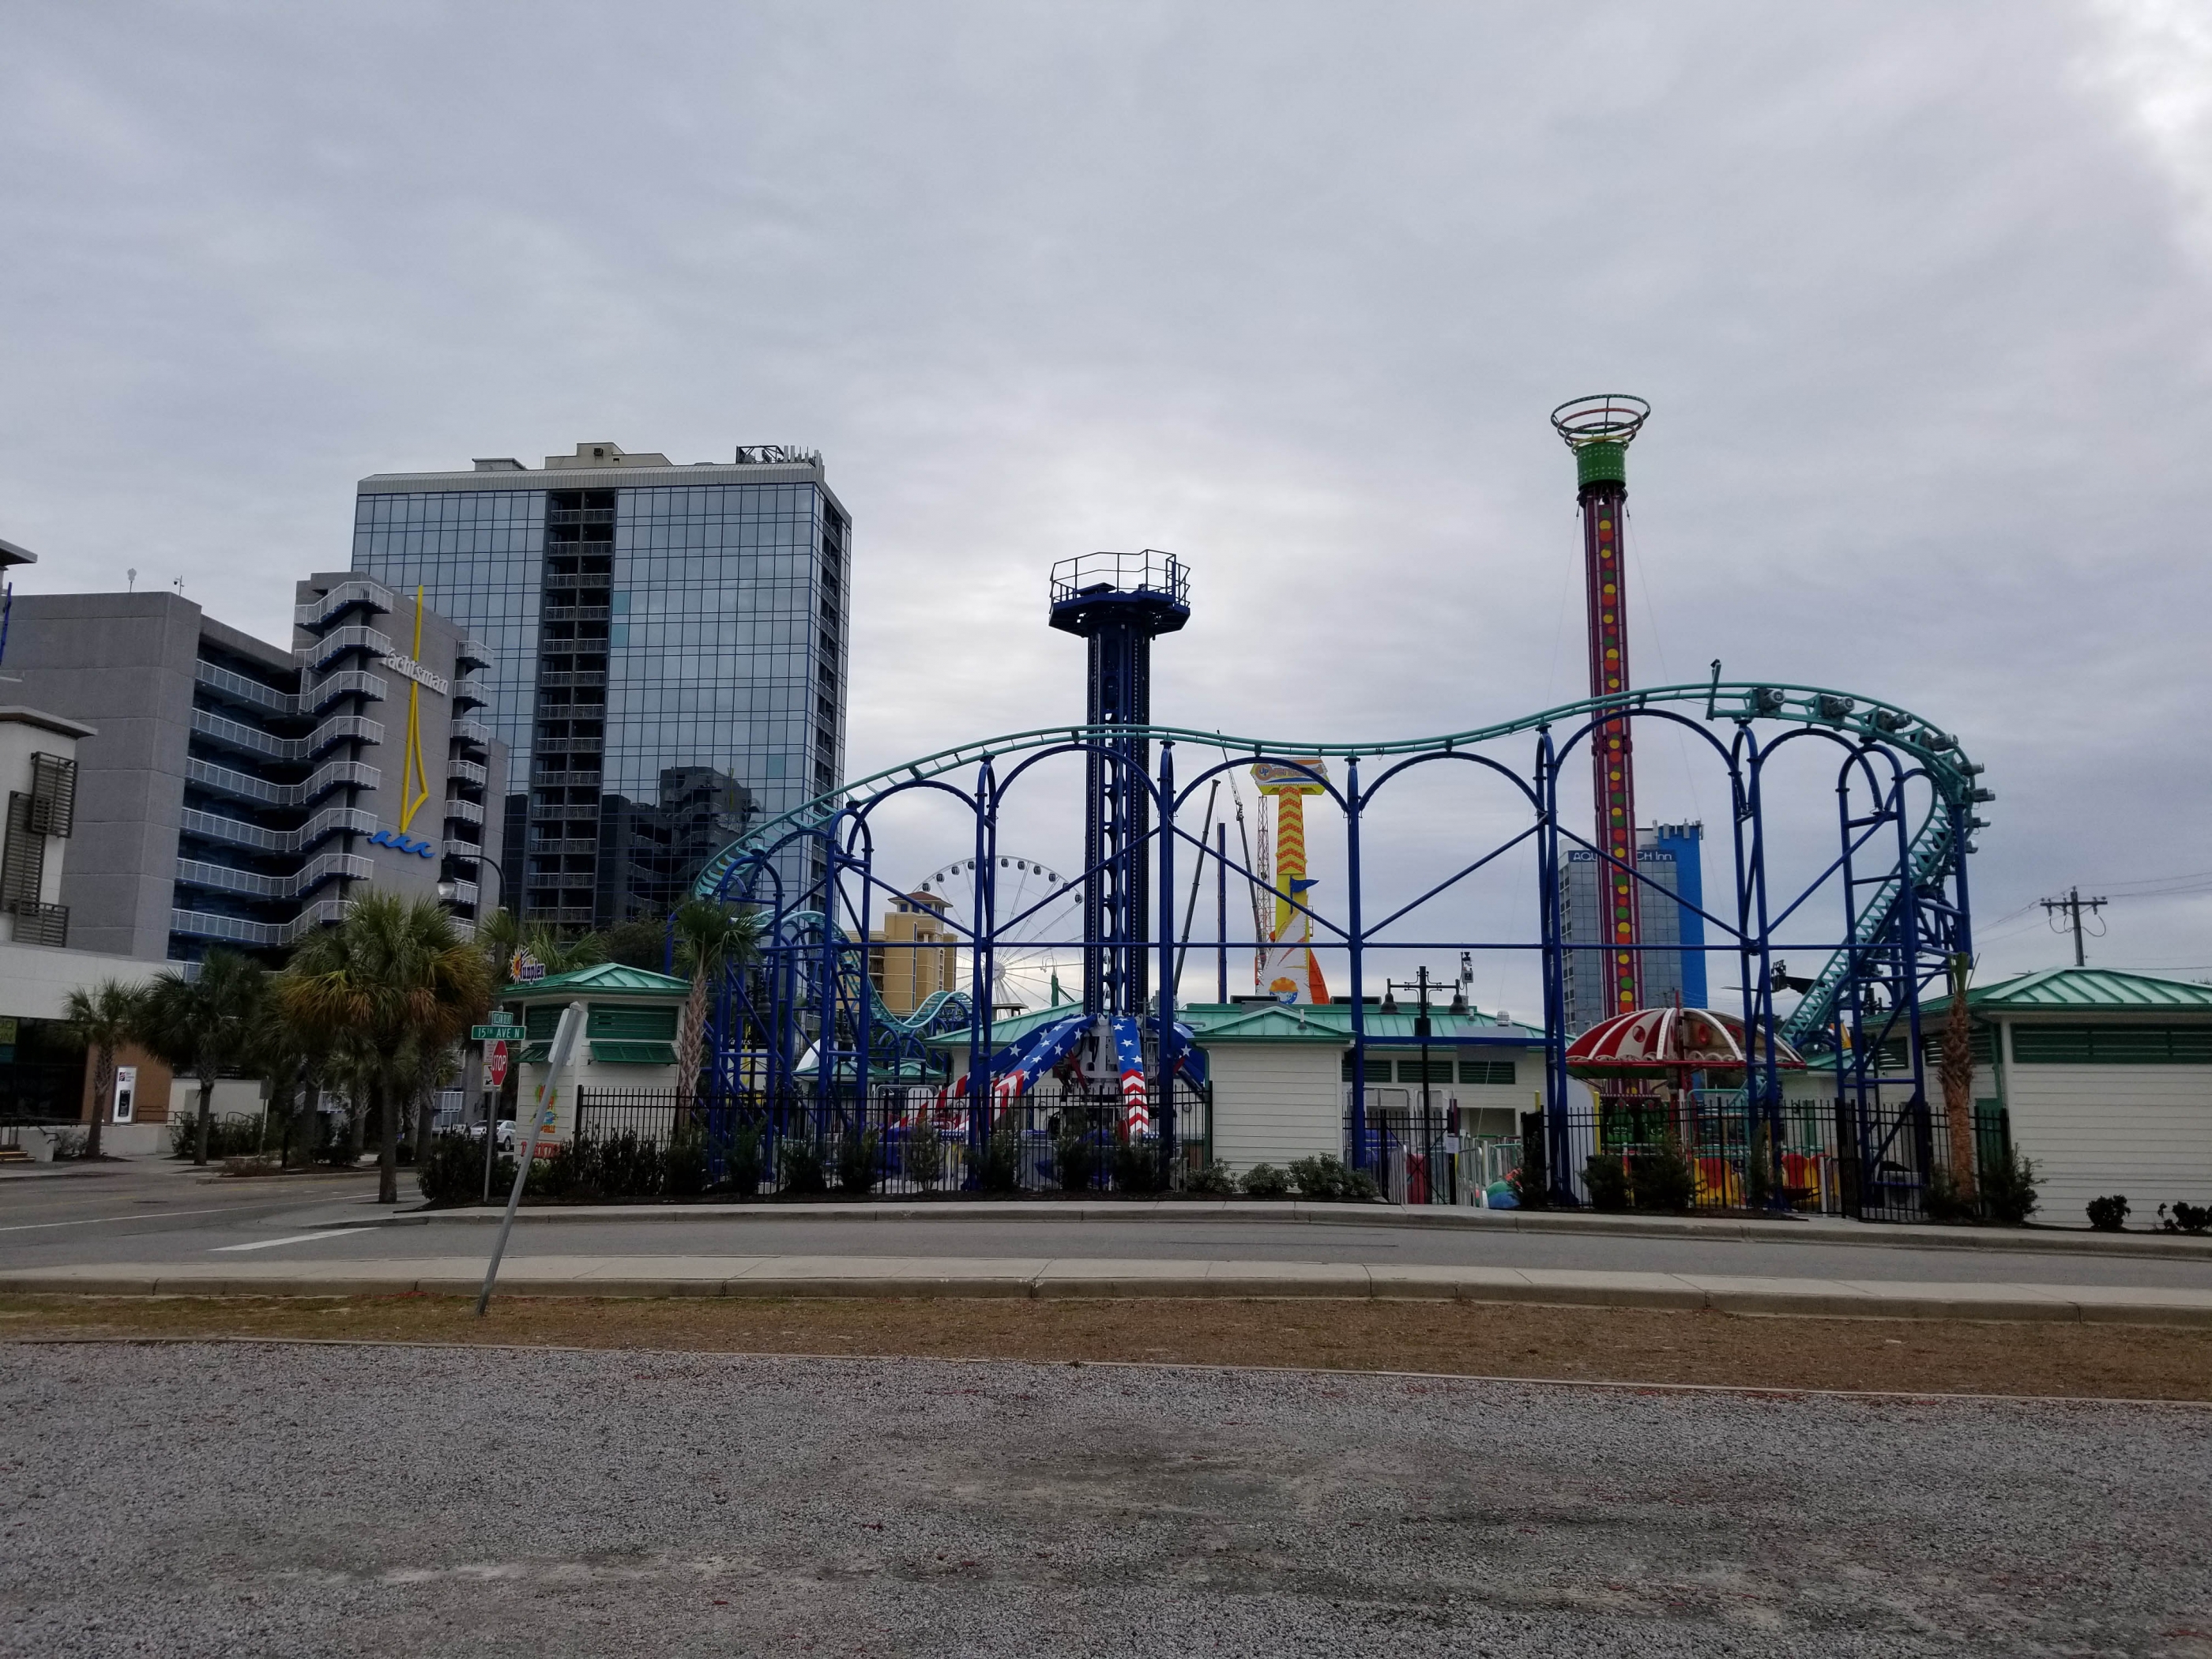 Myrtle Beach Amusement park